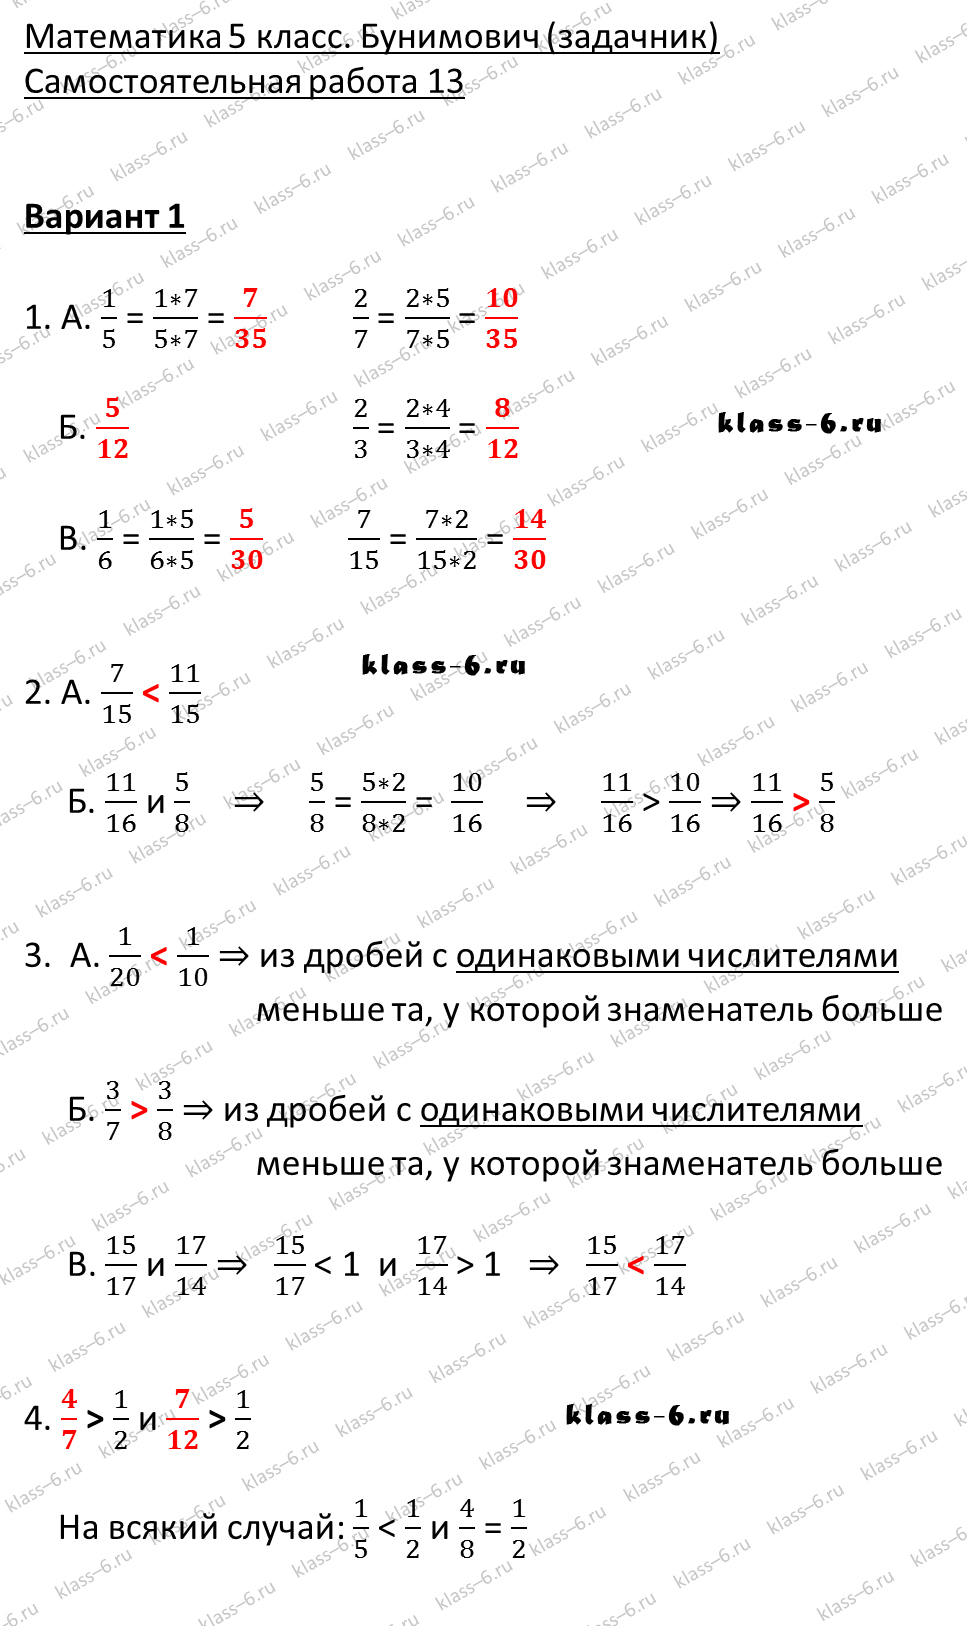 решебник и гдз по математике задачник Бунимович 5 класс самостоятельная работа 13-v1